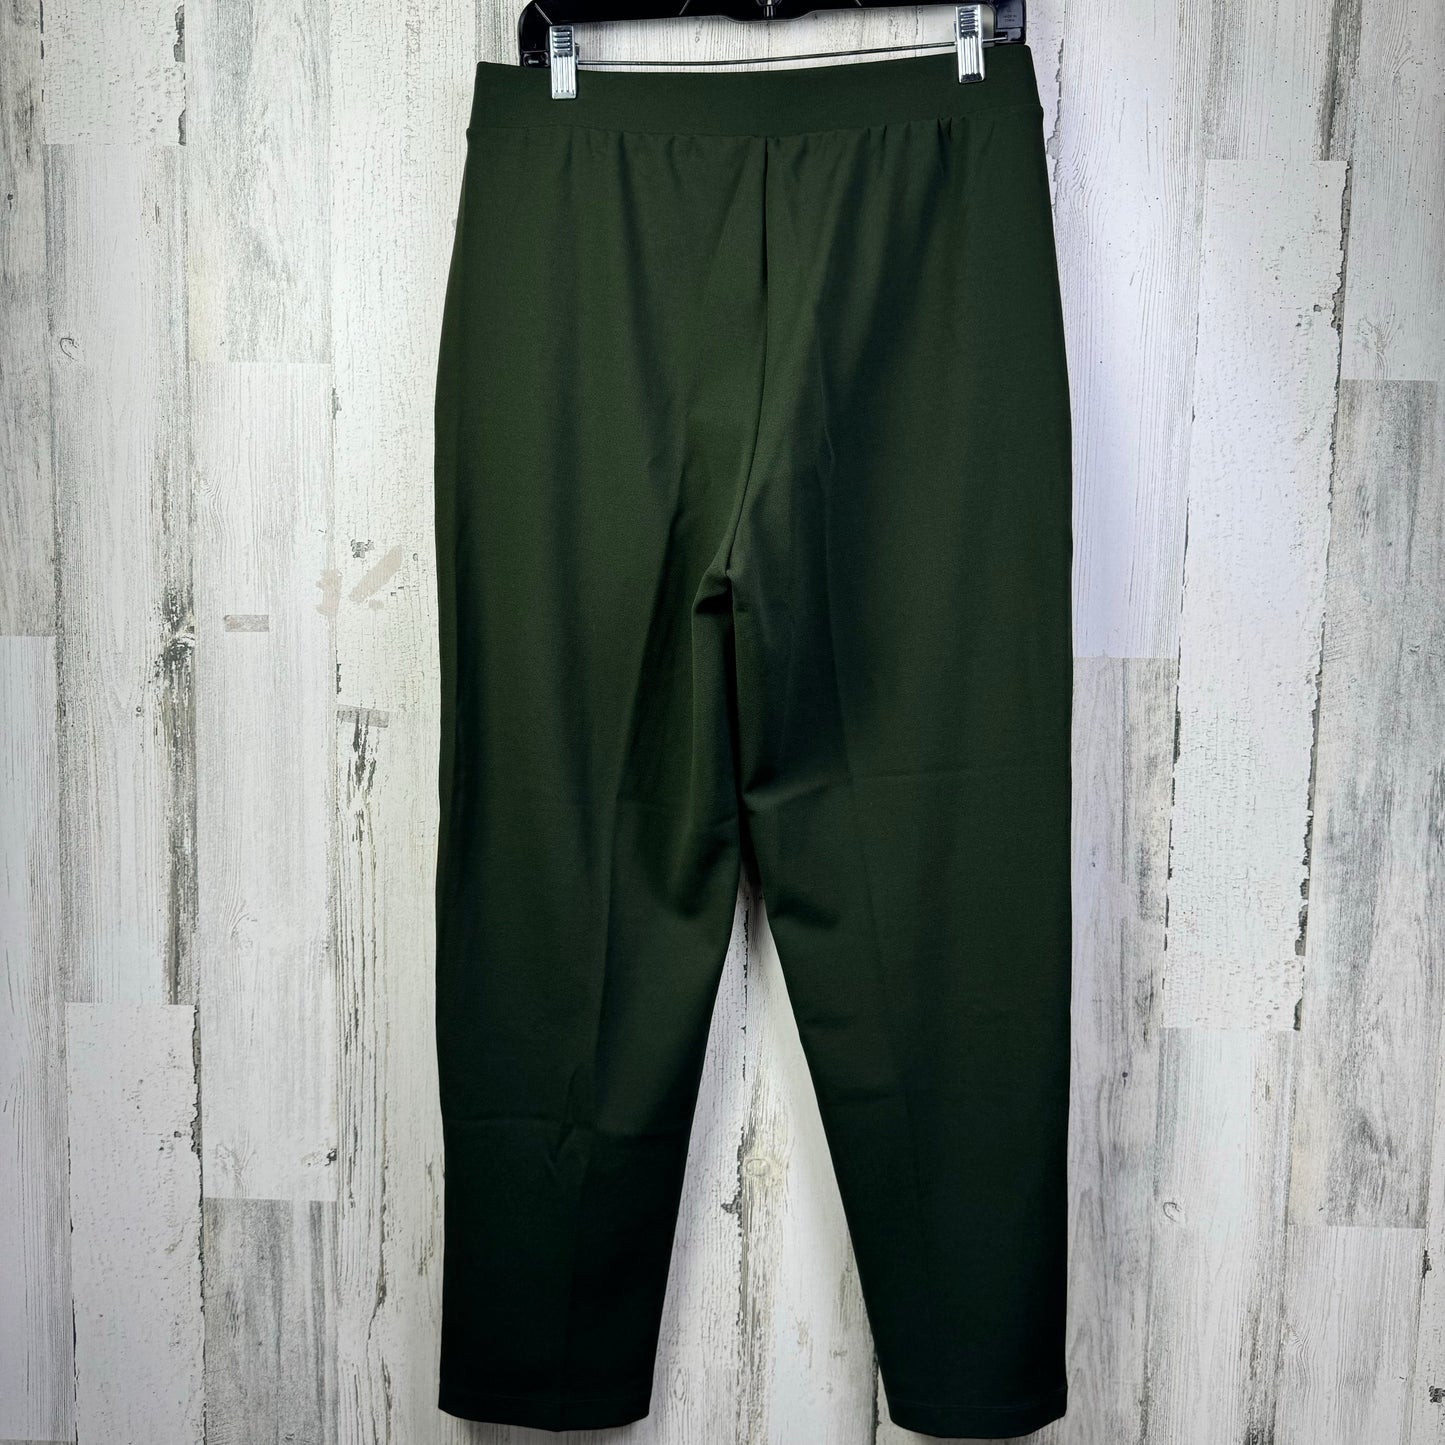 Green Pants Dress Loft, Size 8